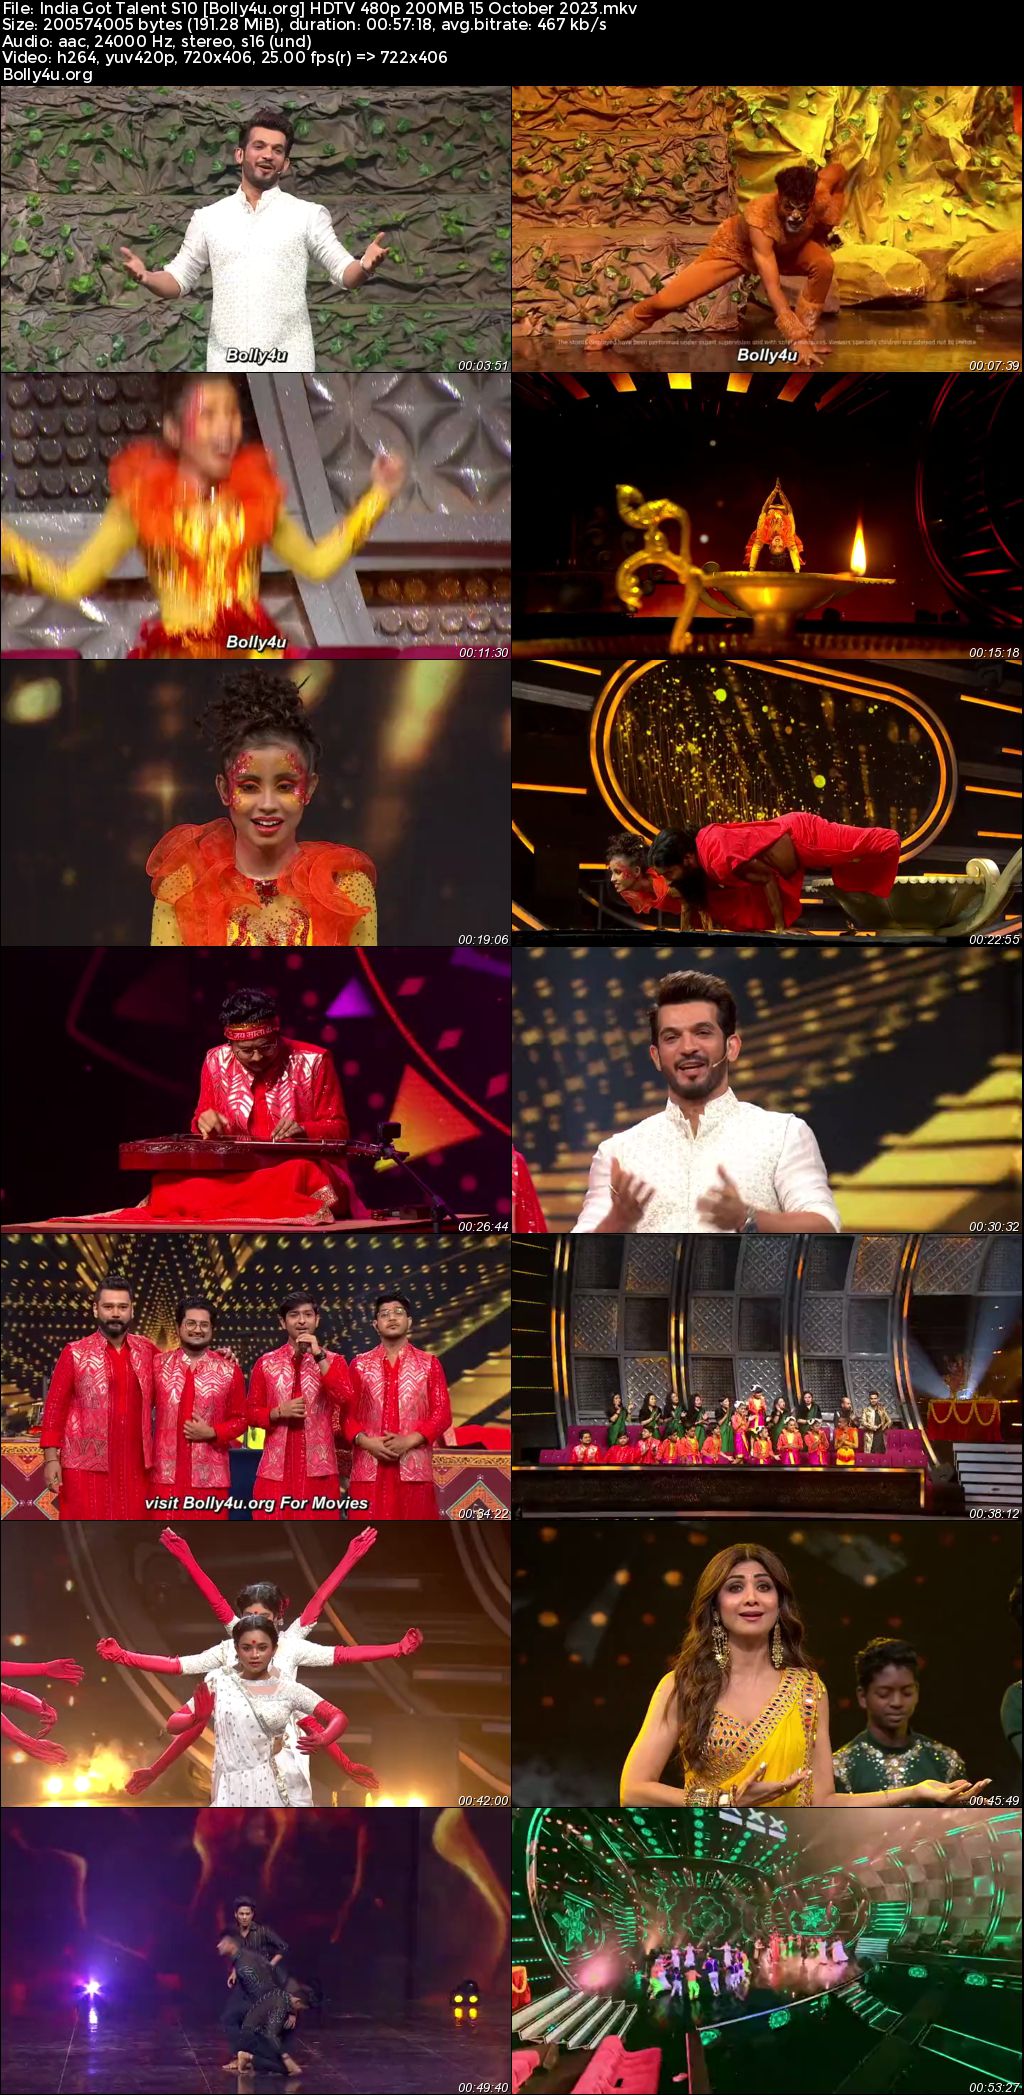  India Got Talent Season S10 HDTV 480p 200Mb 15 October 2023 Download